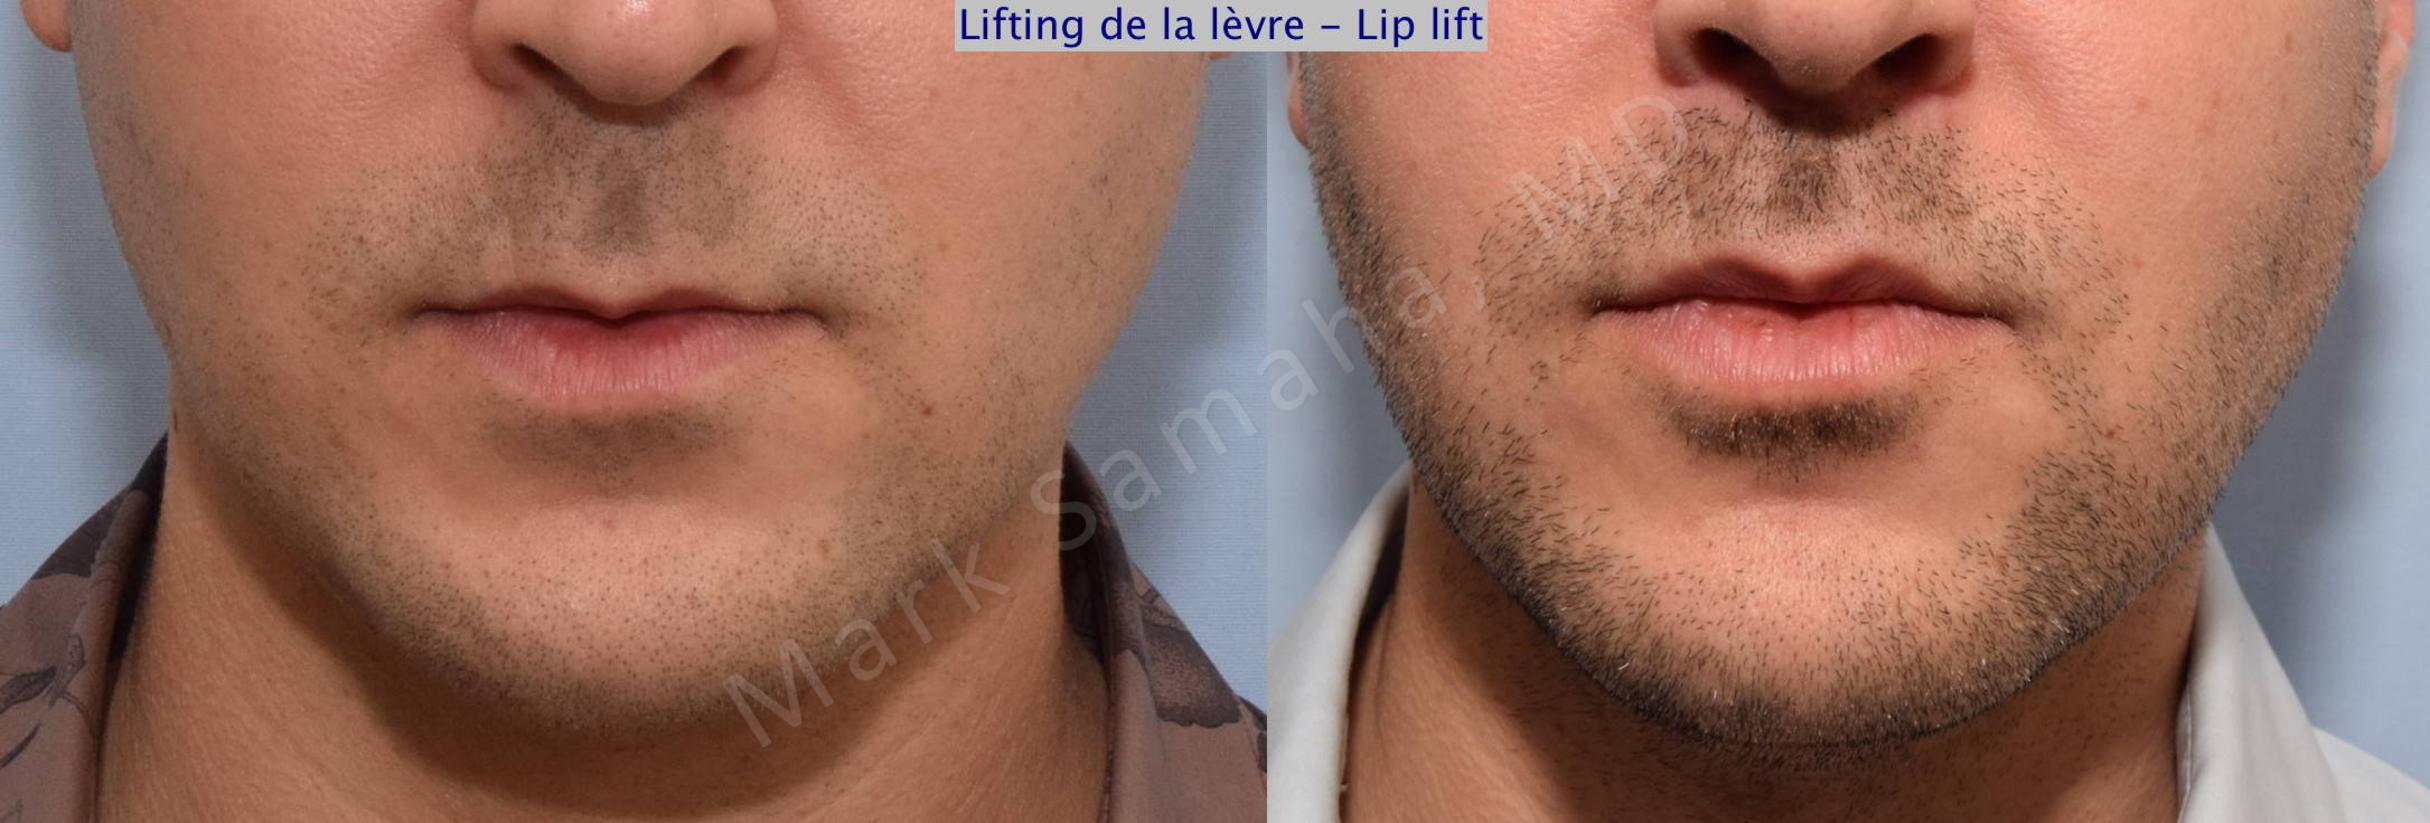 Before & After Lip Lift / Lifting de la lèvre supérieure Case 72 View #1 View in Mount Royal, QC